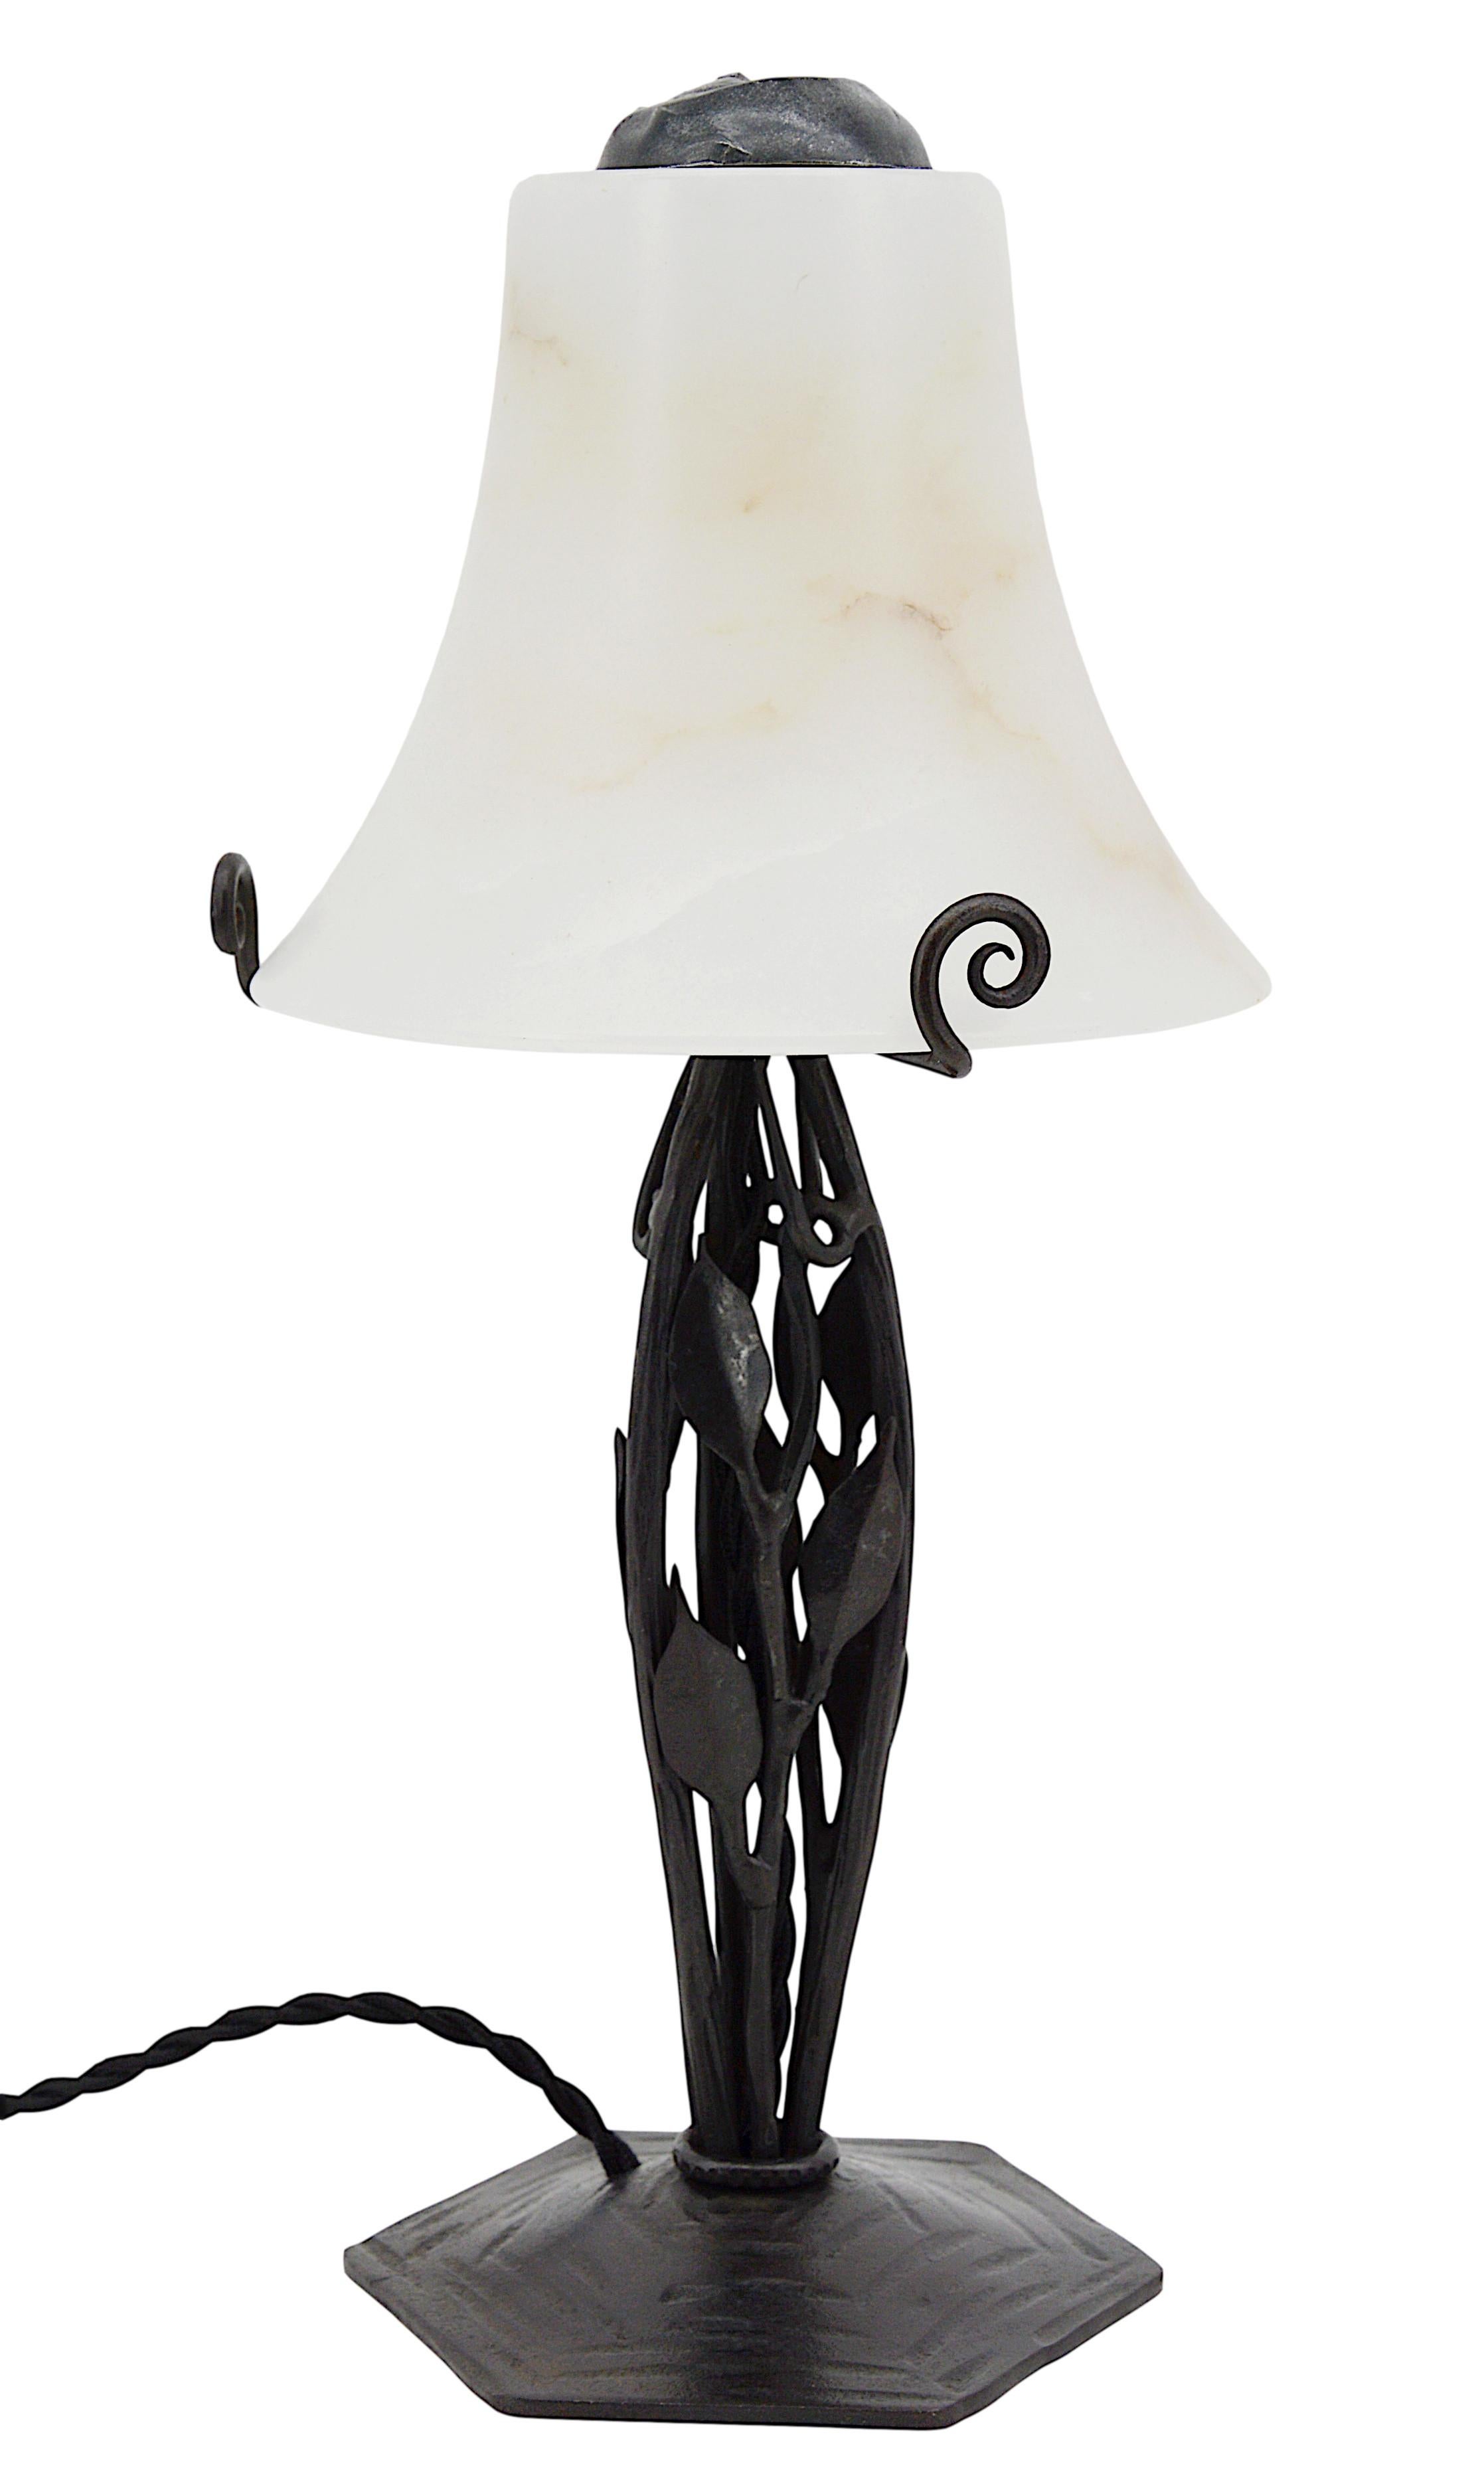 Lampe de table Art déco, France, vers 1925. Abat-jour moderniste et élégant en albâtre sur son socle en fer forgé. Les albâtres anciens ne peuvent être comparés aux nouveaux. Le vieil albâtre a des veines. Parfois, ils peuvent être confondus avec